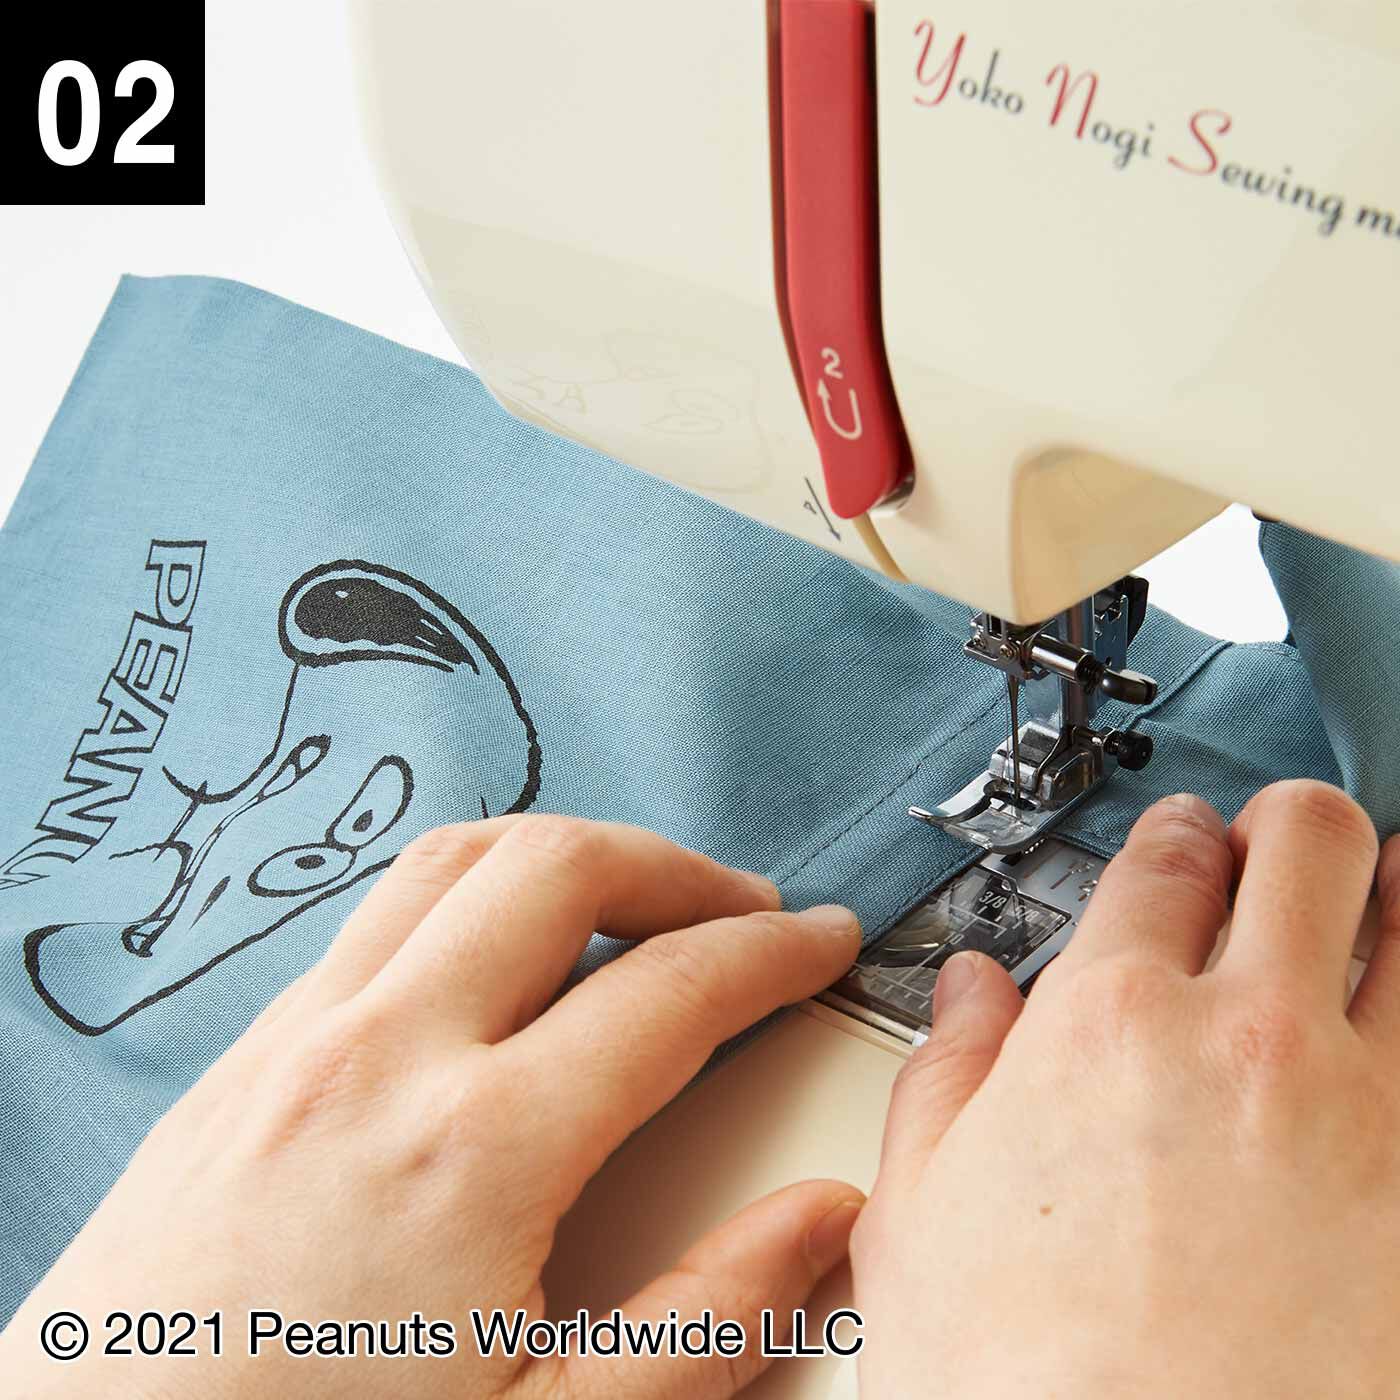 クチュリエ|スヌーピーと仲間たち 型紙いらずの 小さくたためるデイリーエコバッグの会|直線縫いだけのシンプルなデザインでミシンがけも簡単です。